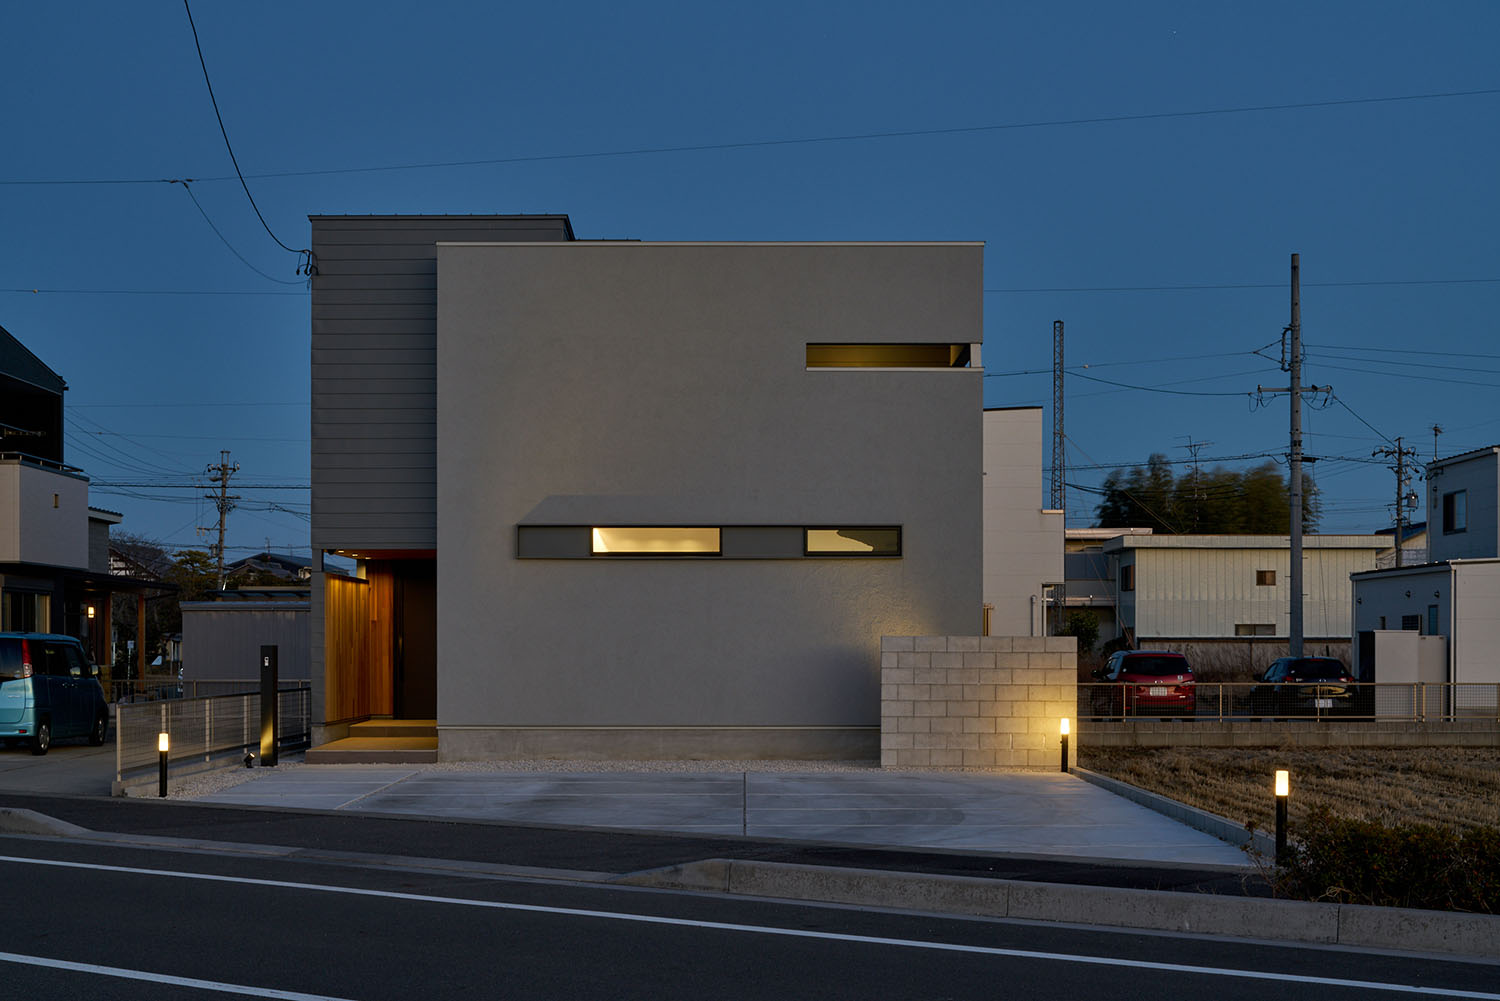 スリット窓からの光や屋外照明によって照らされるキューブ状の外観の住宅・デザイン住宅